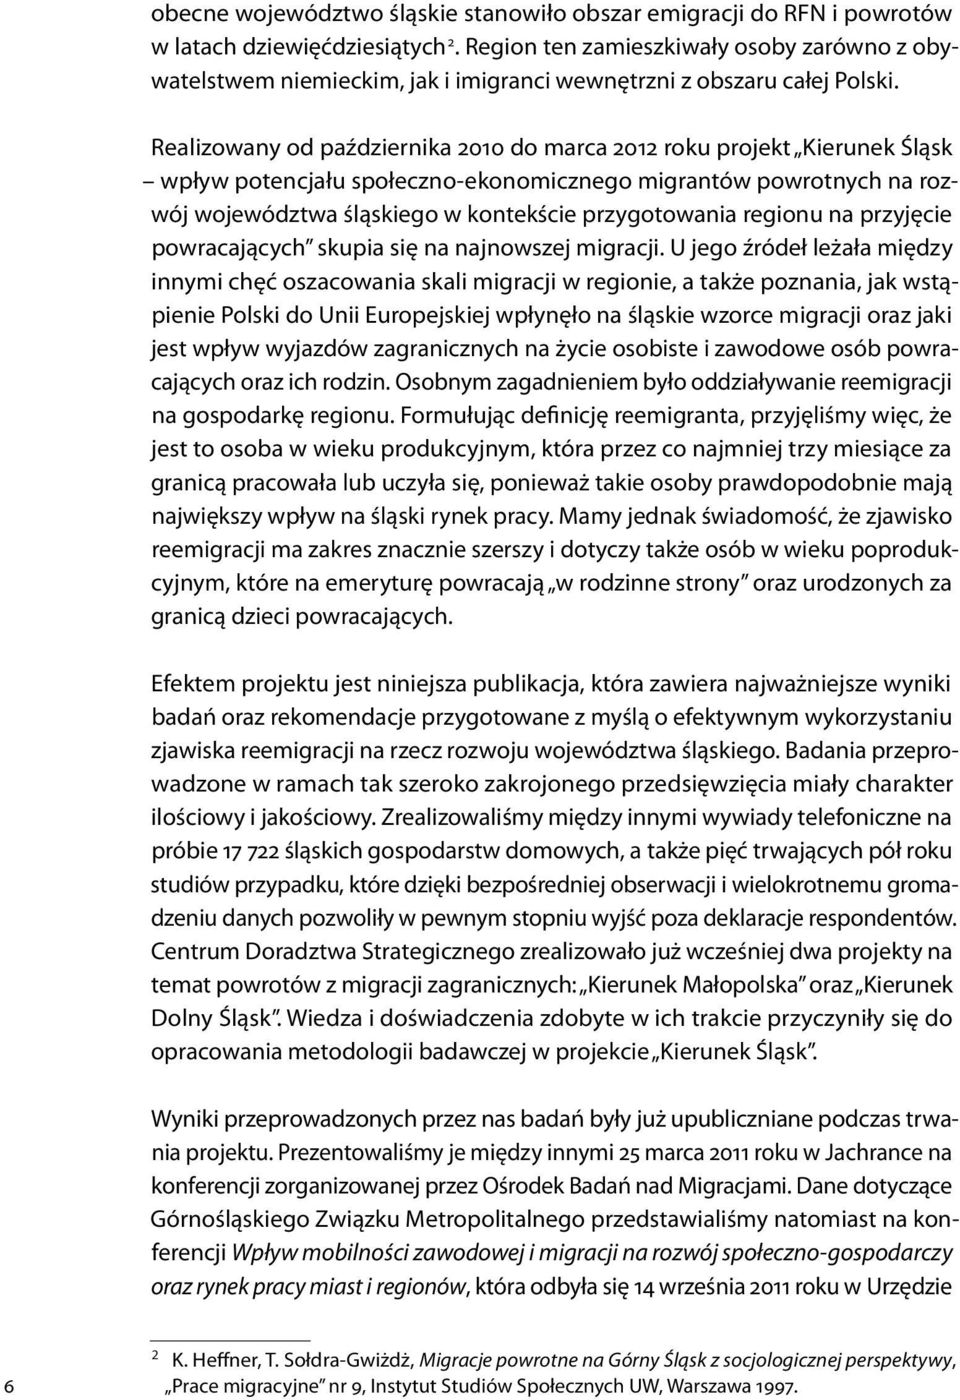 Realizowany od października 2010 do marca 2012 roku projekt Kierunek Śląsk wpływ potencjału społeczno-ekonomicznego migrantów powrotnych na rozwój województwa śląskiego w kontekście przygotowania